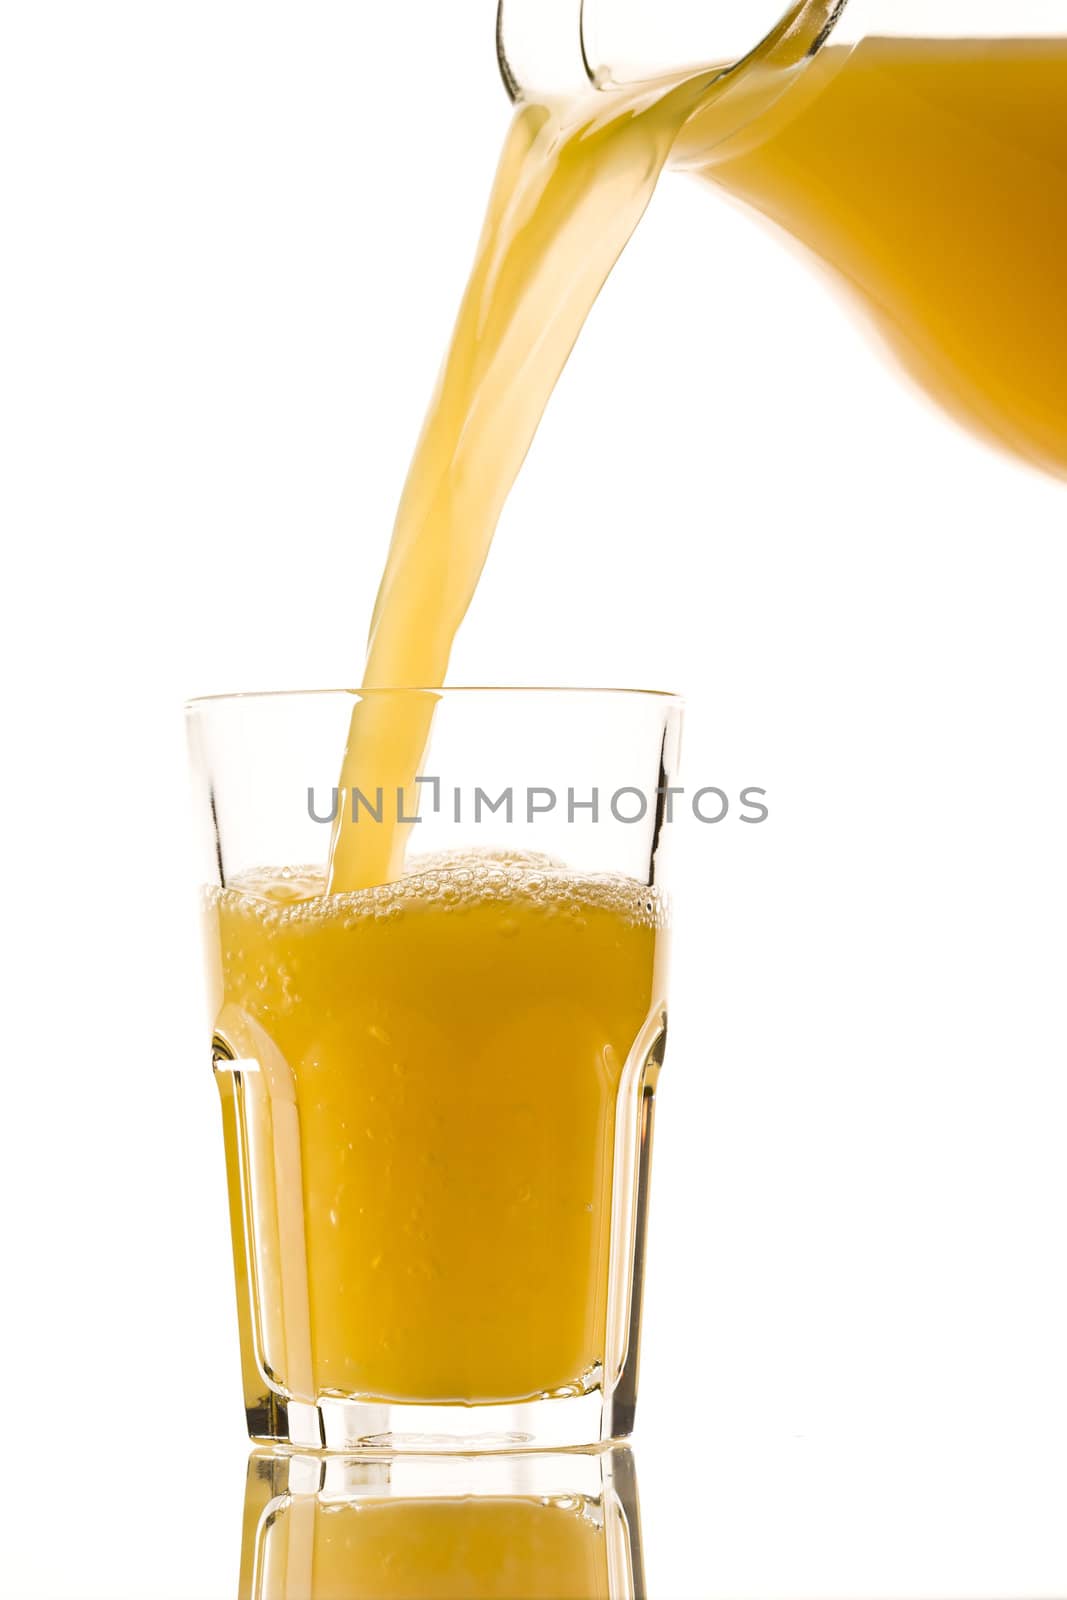 drink series: orange juice flowing from jug